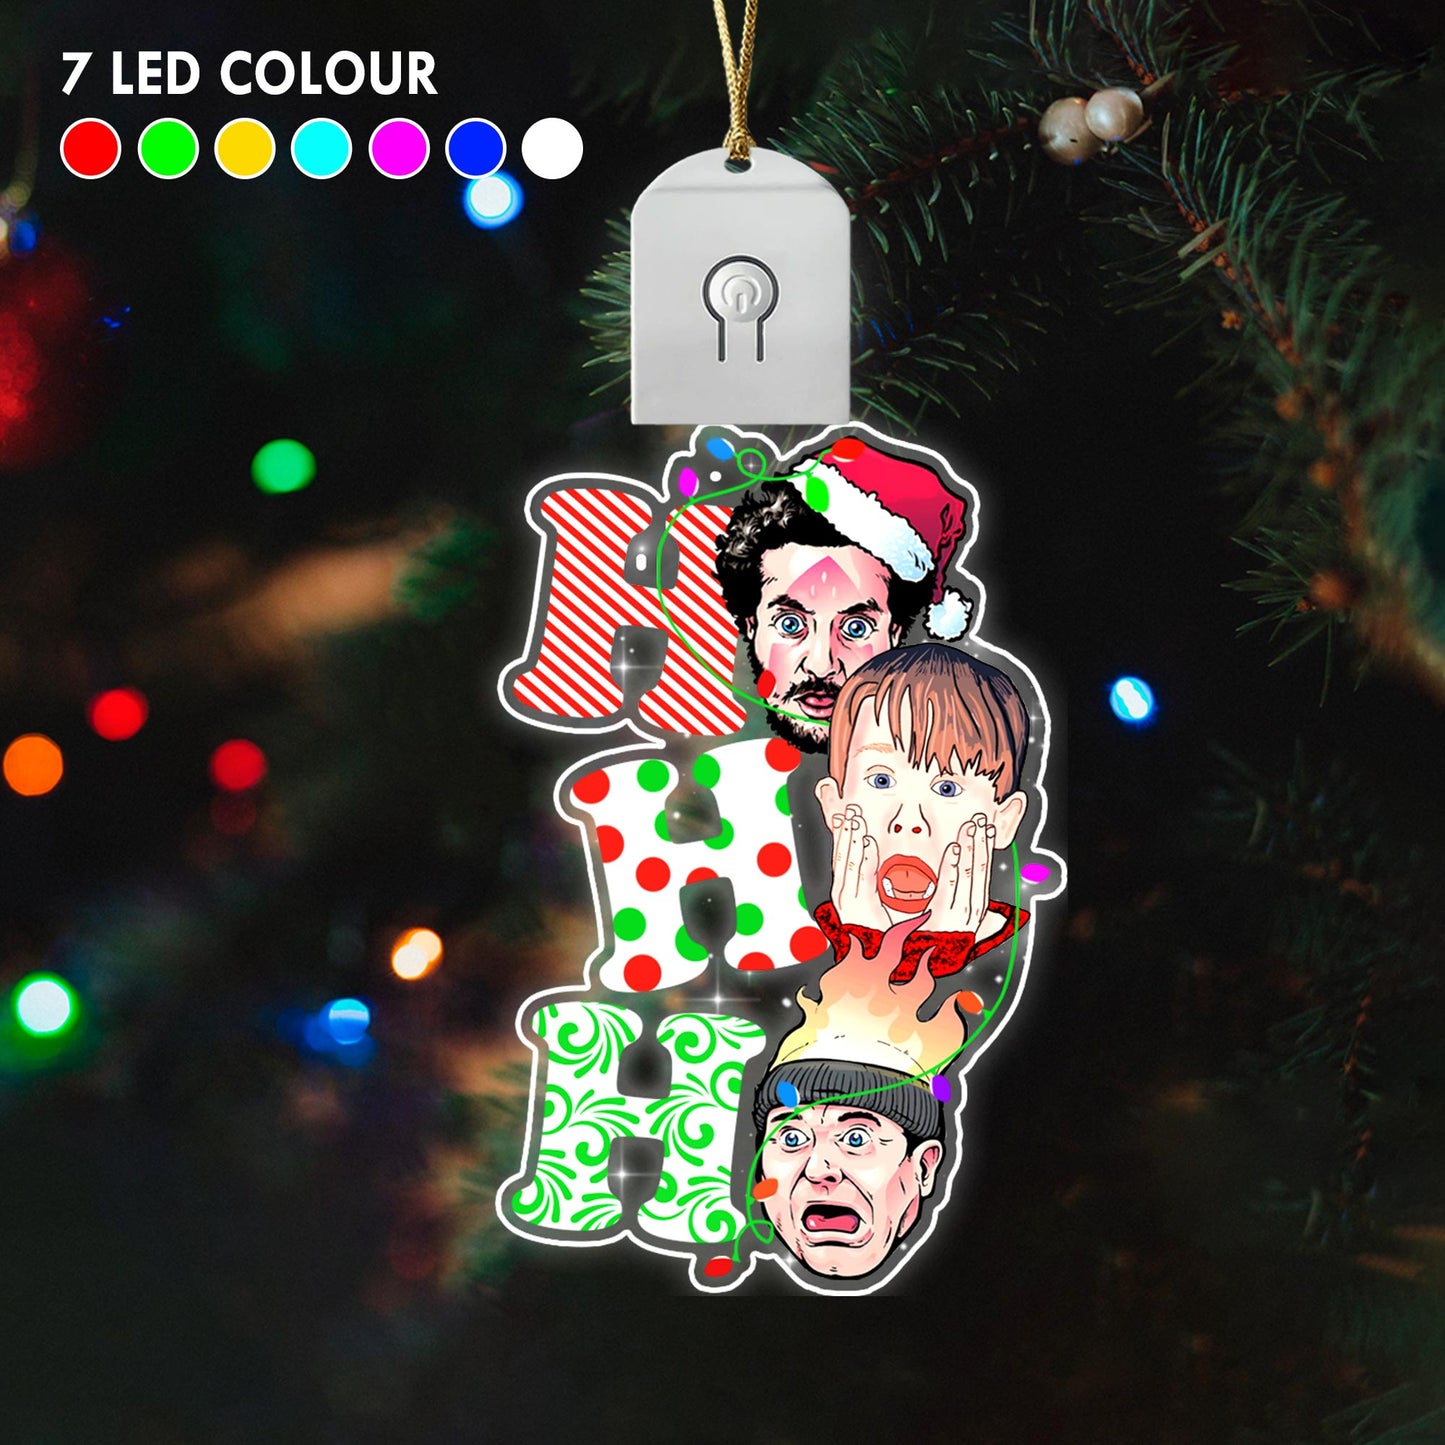 Ho Ho Ho - Christmas Shaped Led Acrylic Ornament